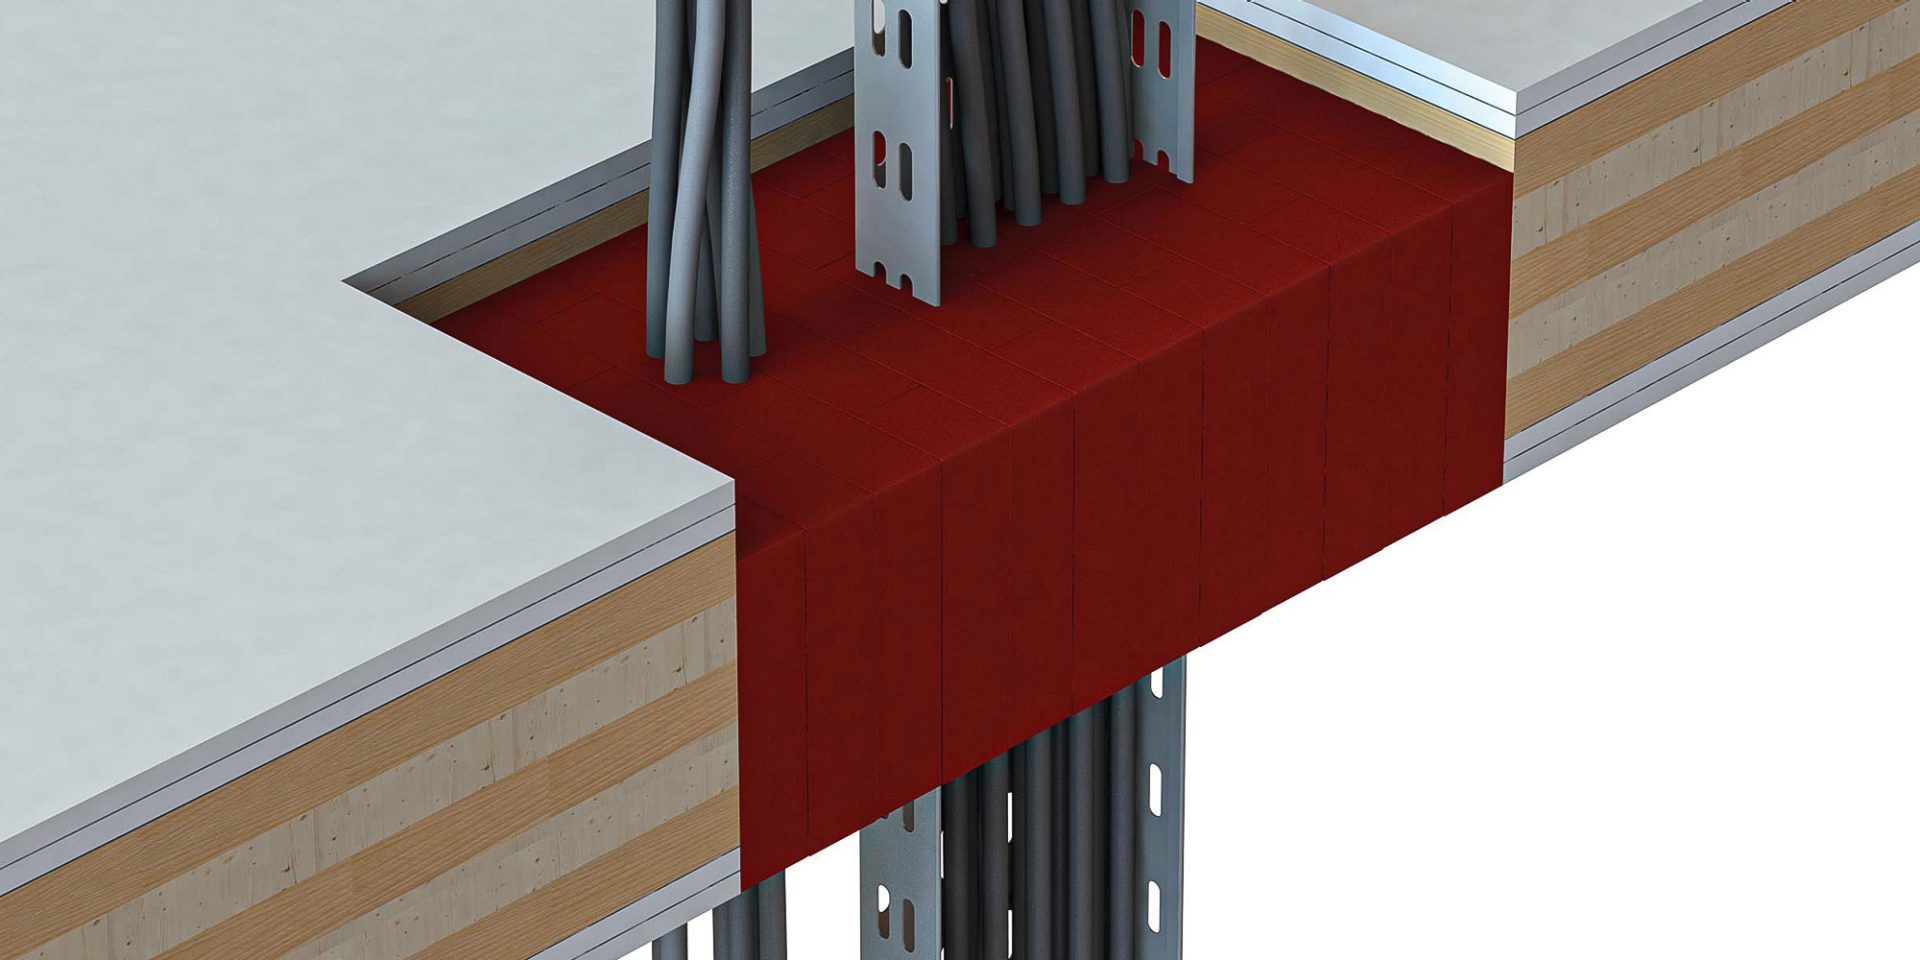 Toepassing Hilti-brandbeveiligingssteen in kruislaminaatconstructie van hout